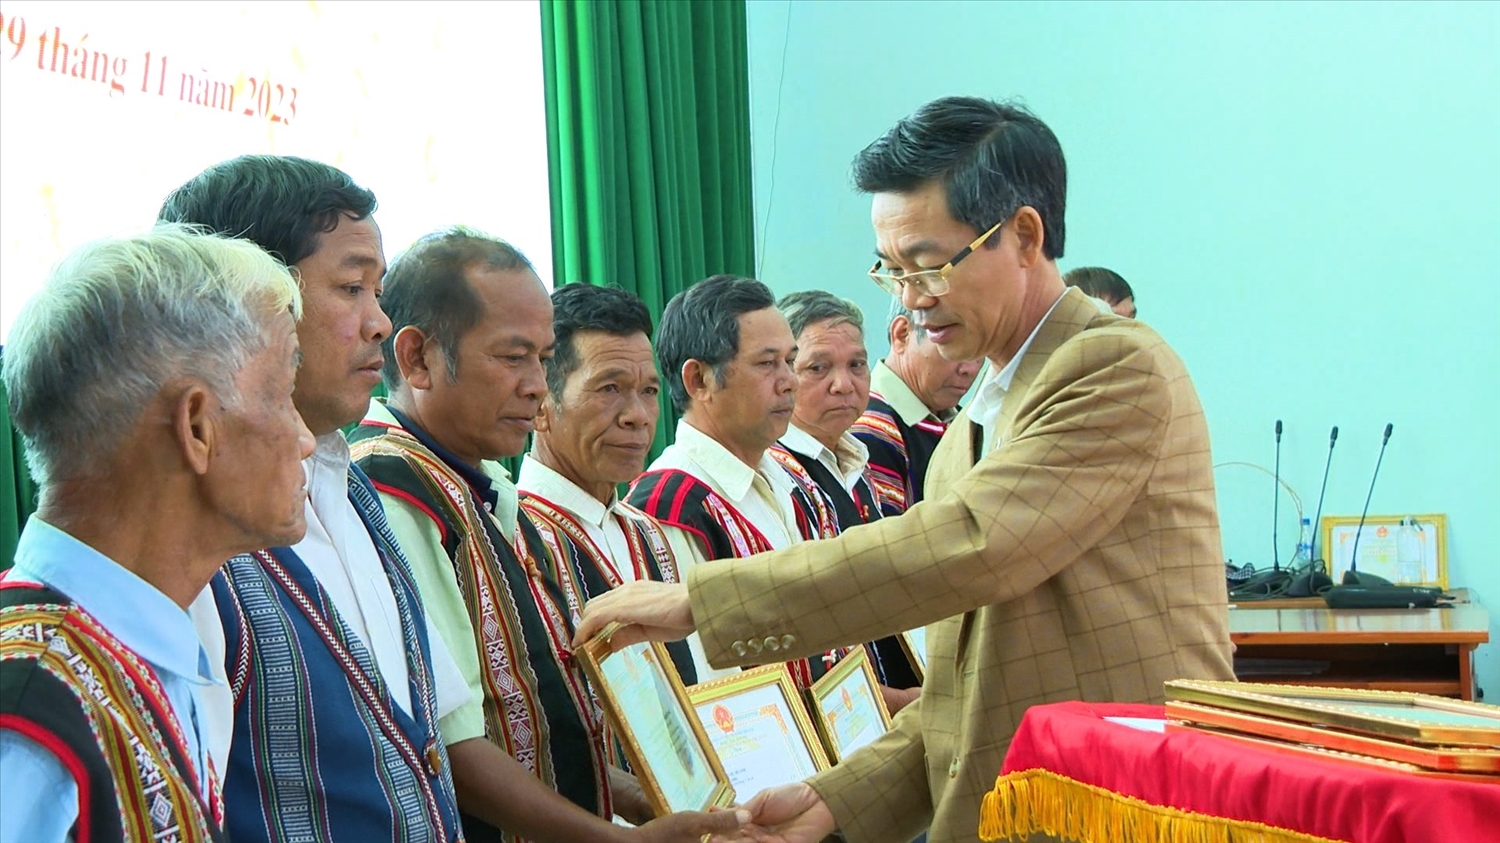 Phó Chủ tịch UBND huyện Chư Prông tặng giấy khen cho Người có uy tín tiêu biểu trong đồng bào DTTS năm 2023 trên địa bàn